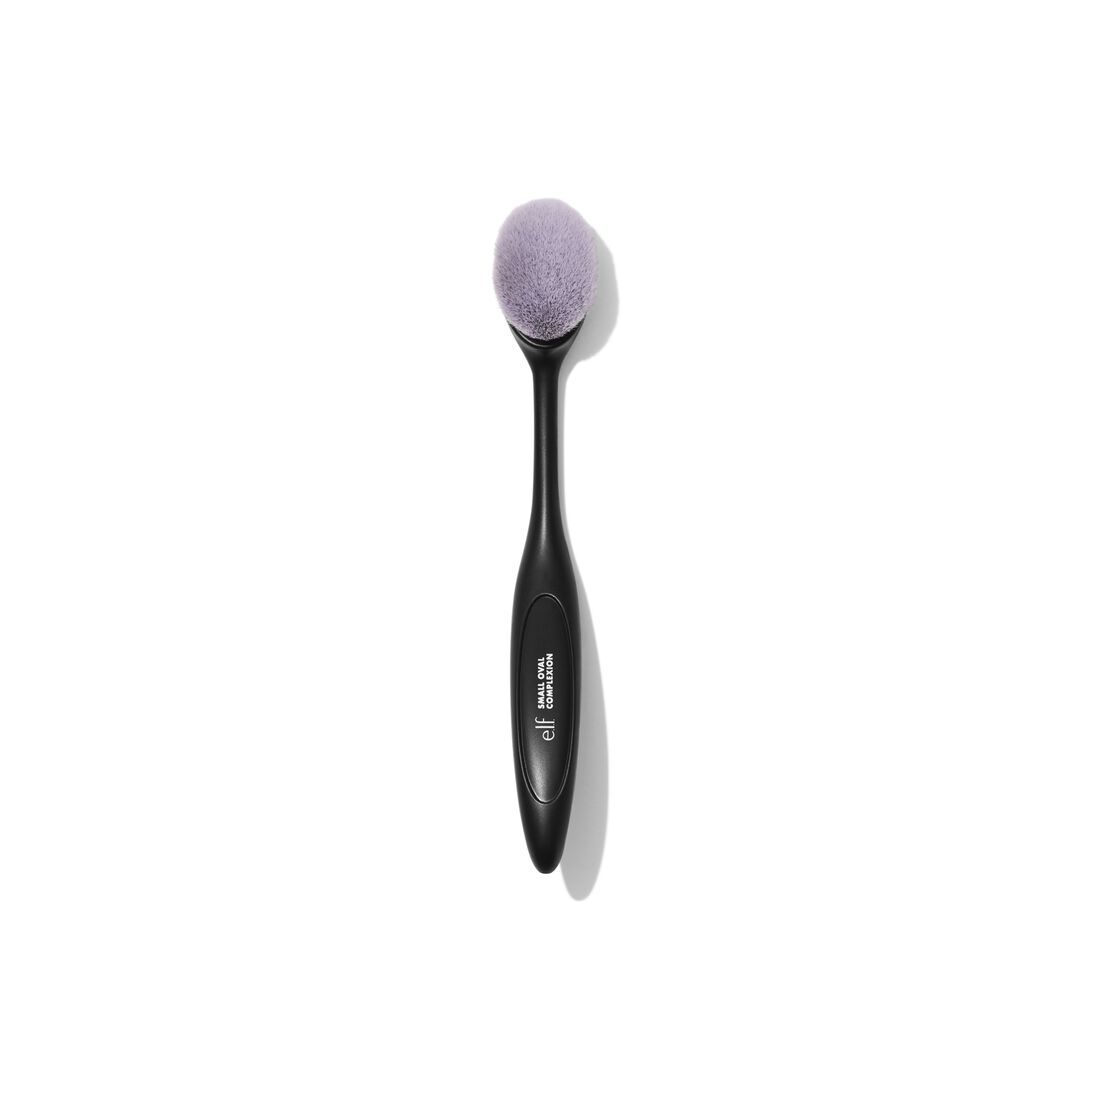 Small Oval Complexion Brush | e.l.f. cosmetics (US)